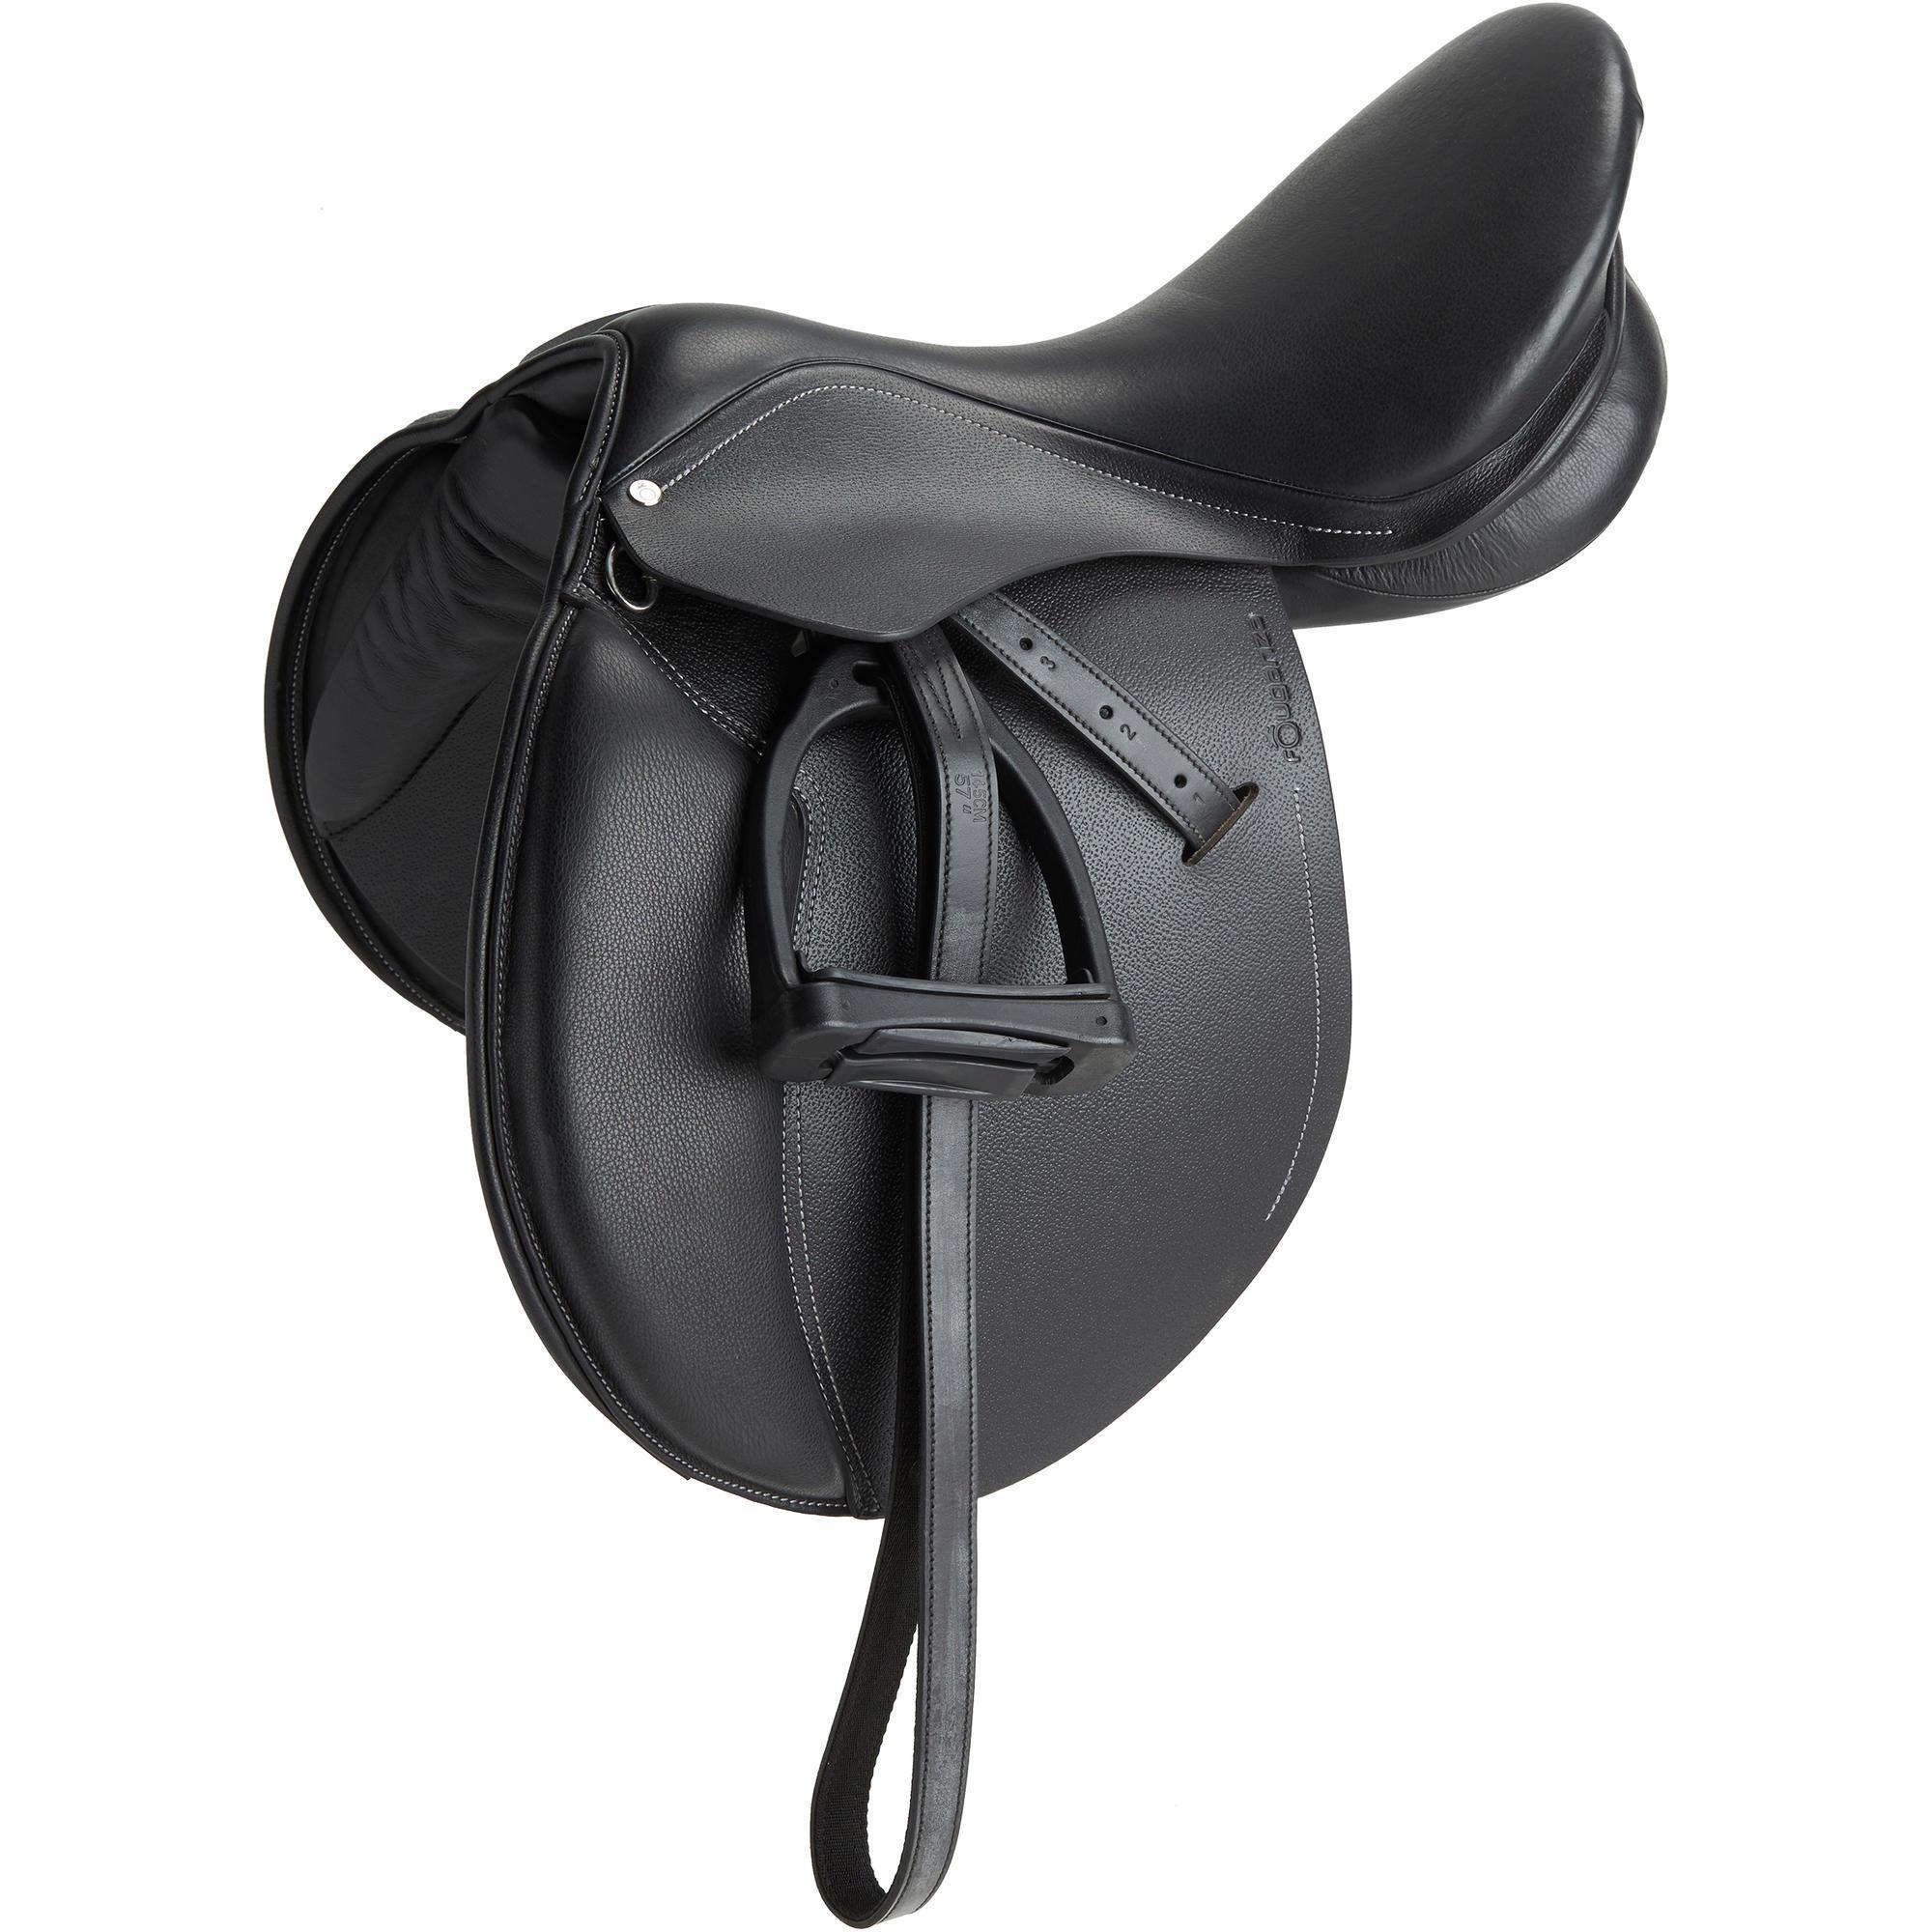 FOUGANZA Sella polivalente cuoio equipaggiata SCHOOLING cavallo nera 17’’5